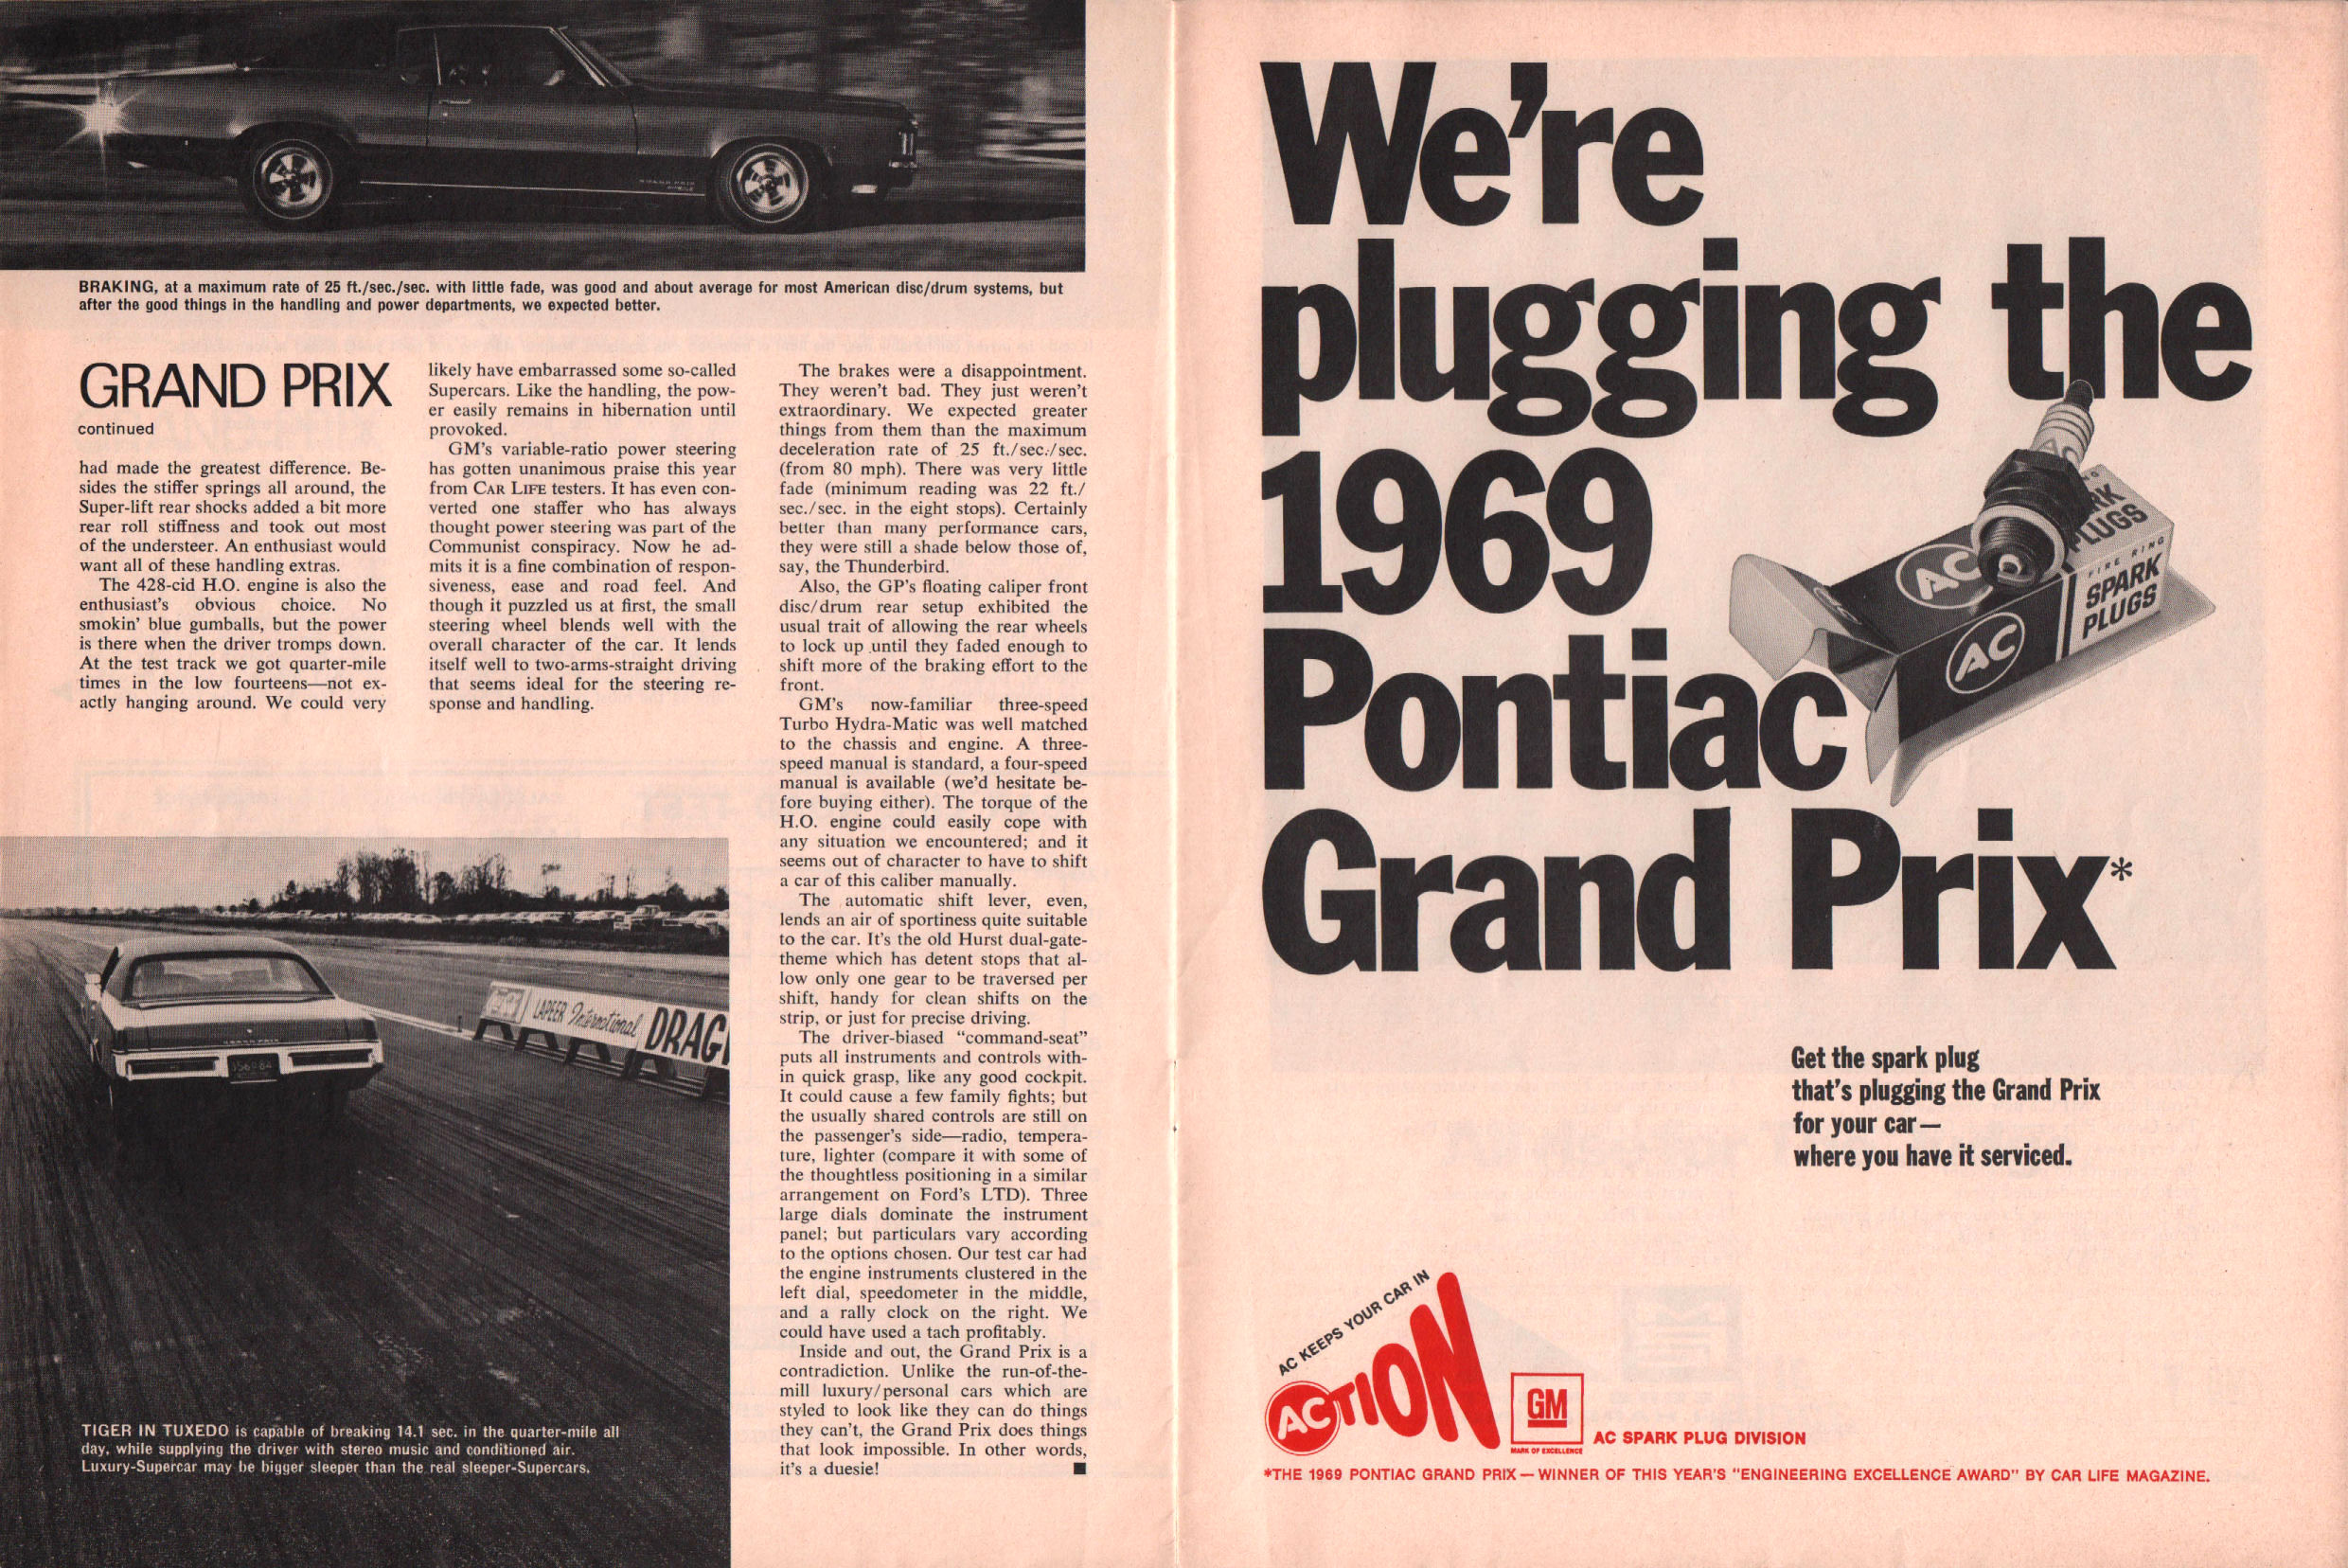 1969_Pontiac_Grand_Prix_Reprint-14-15